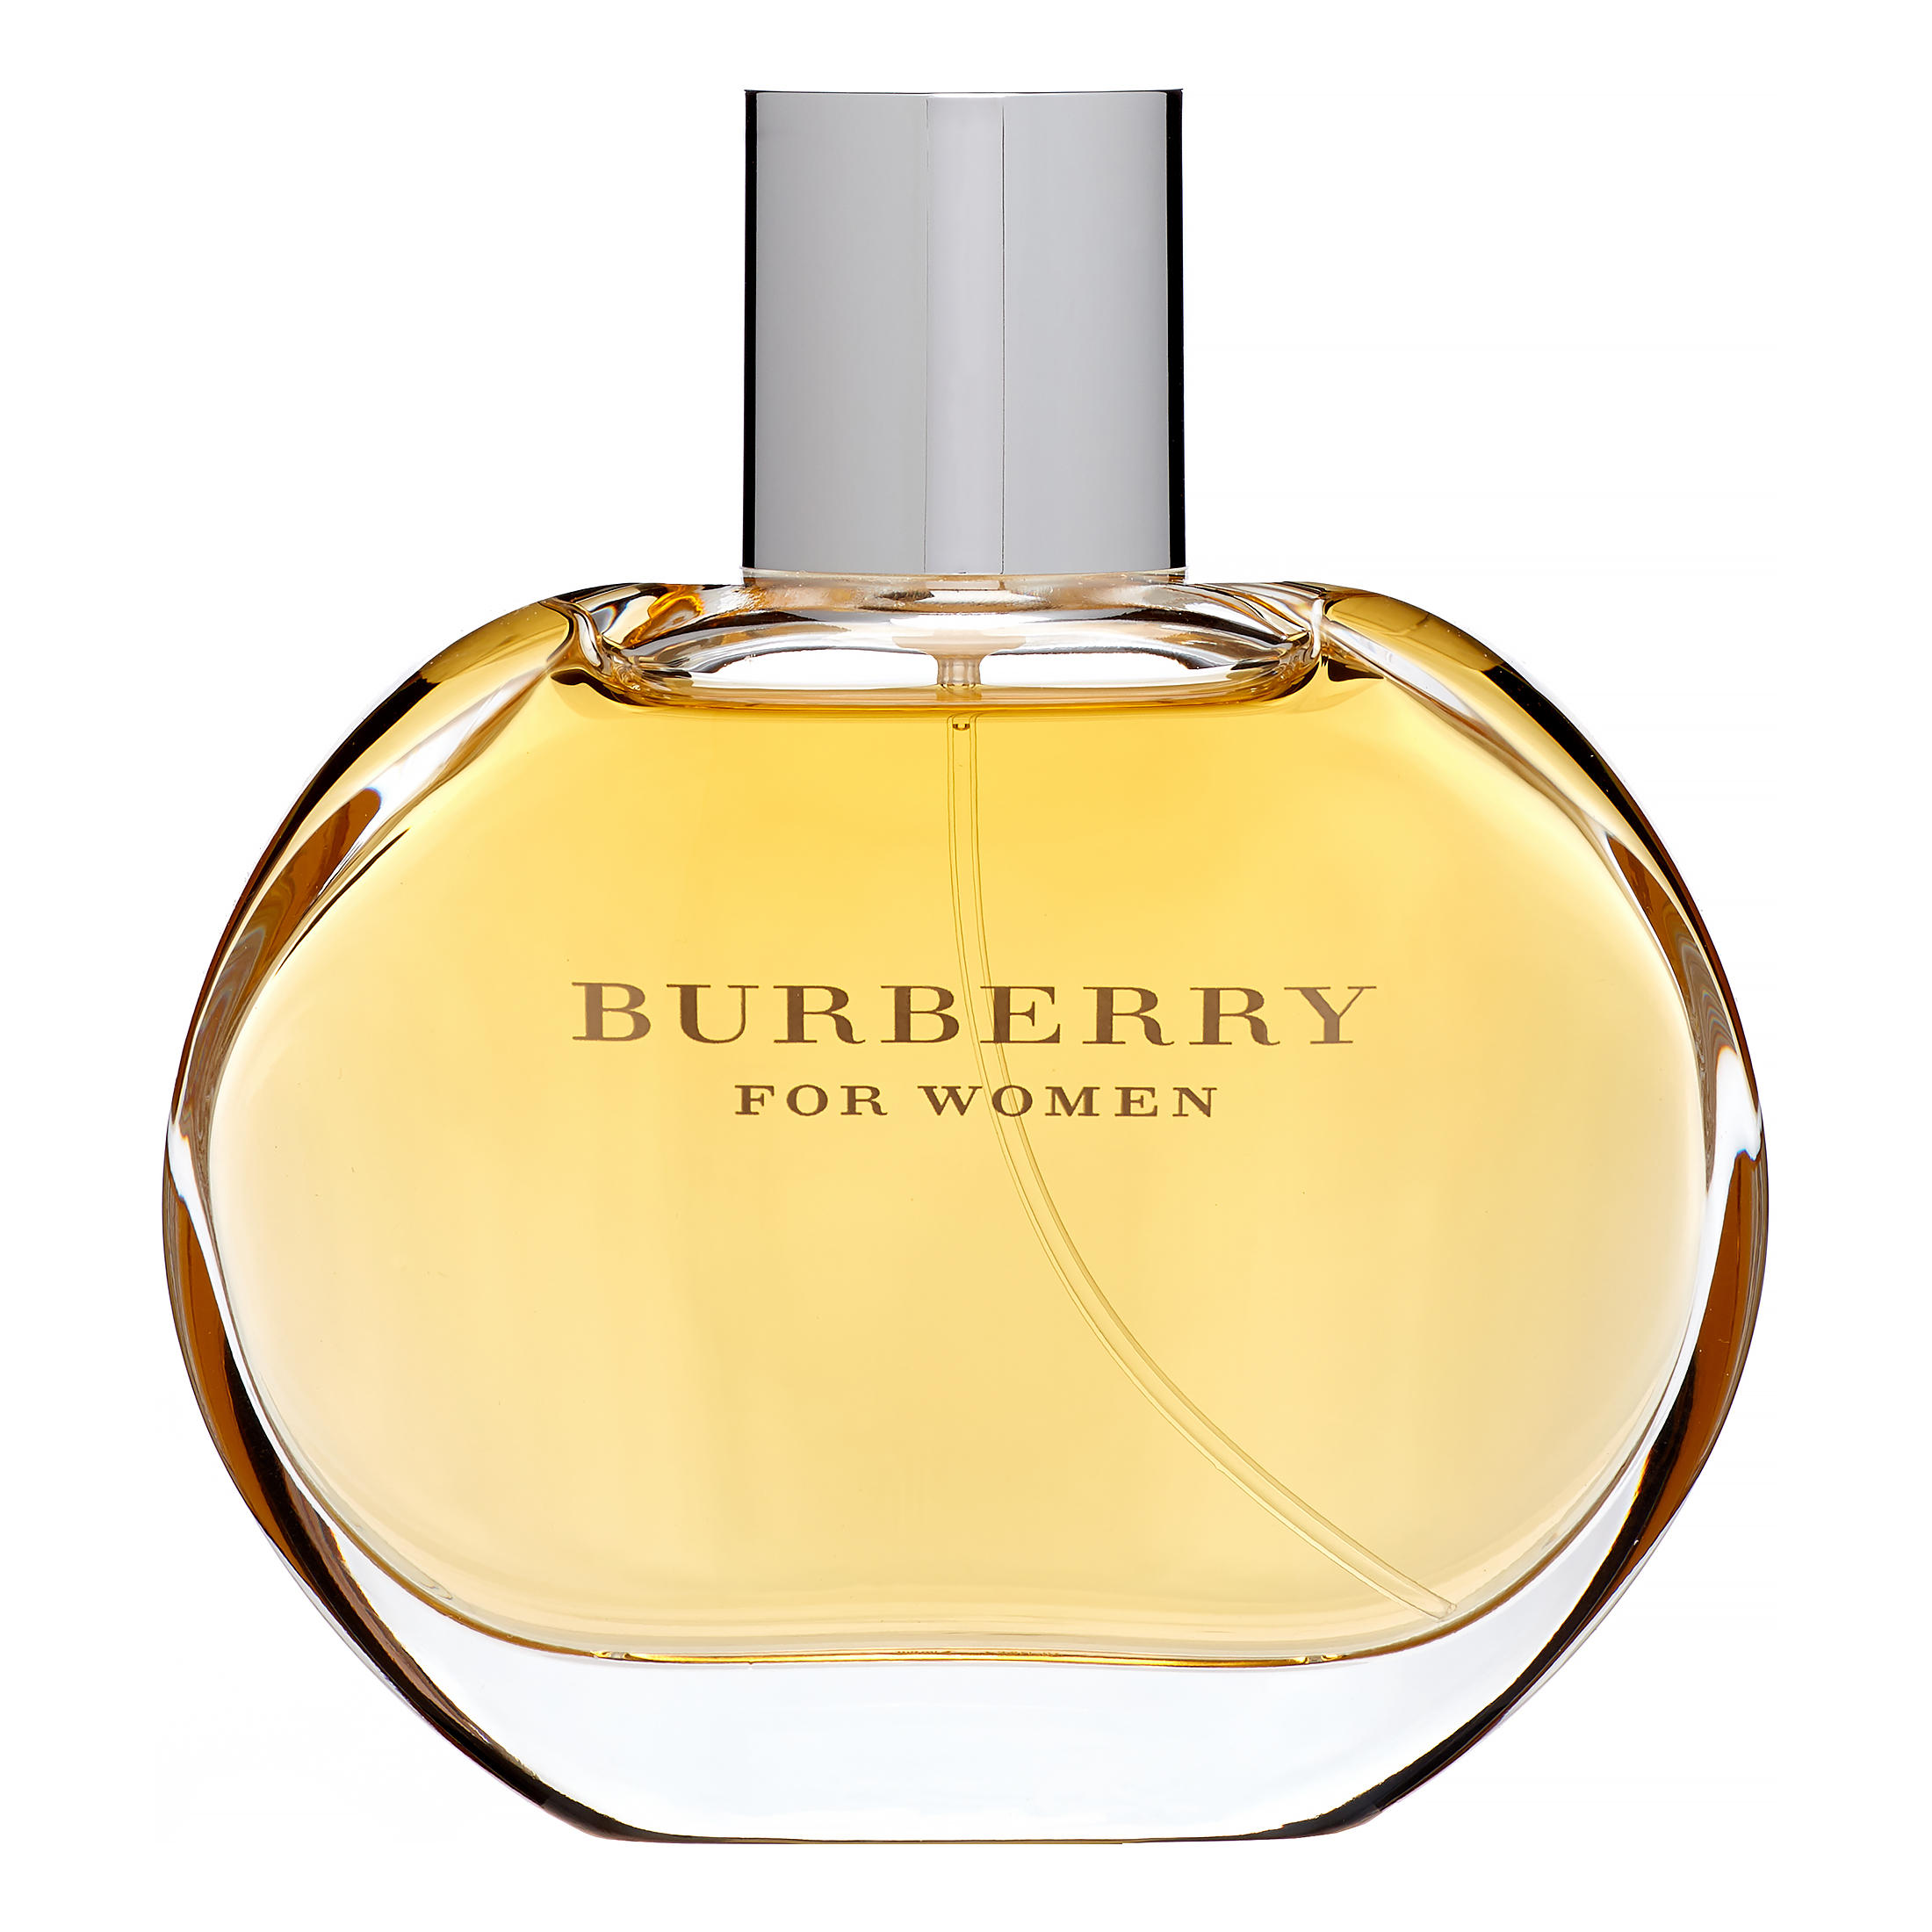 Top 31+ imagen burberry fragrances